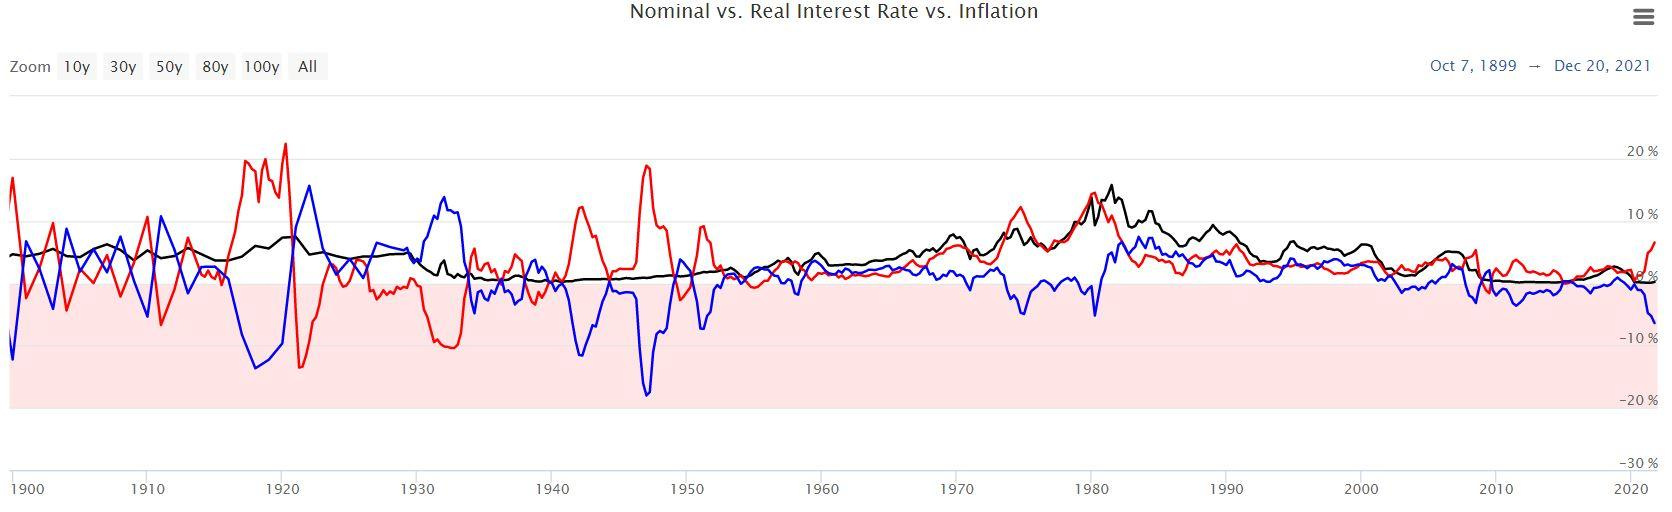 Ставки процента в США: номинальные (черный), инфляция (красный), реальные (синий) https://www.longtermtrends.net/real-interest-rate/